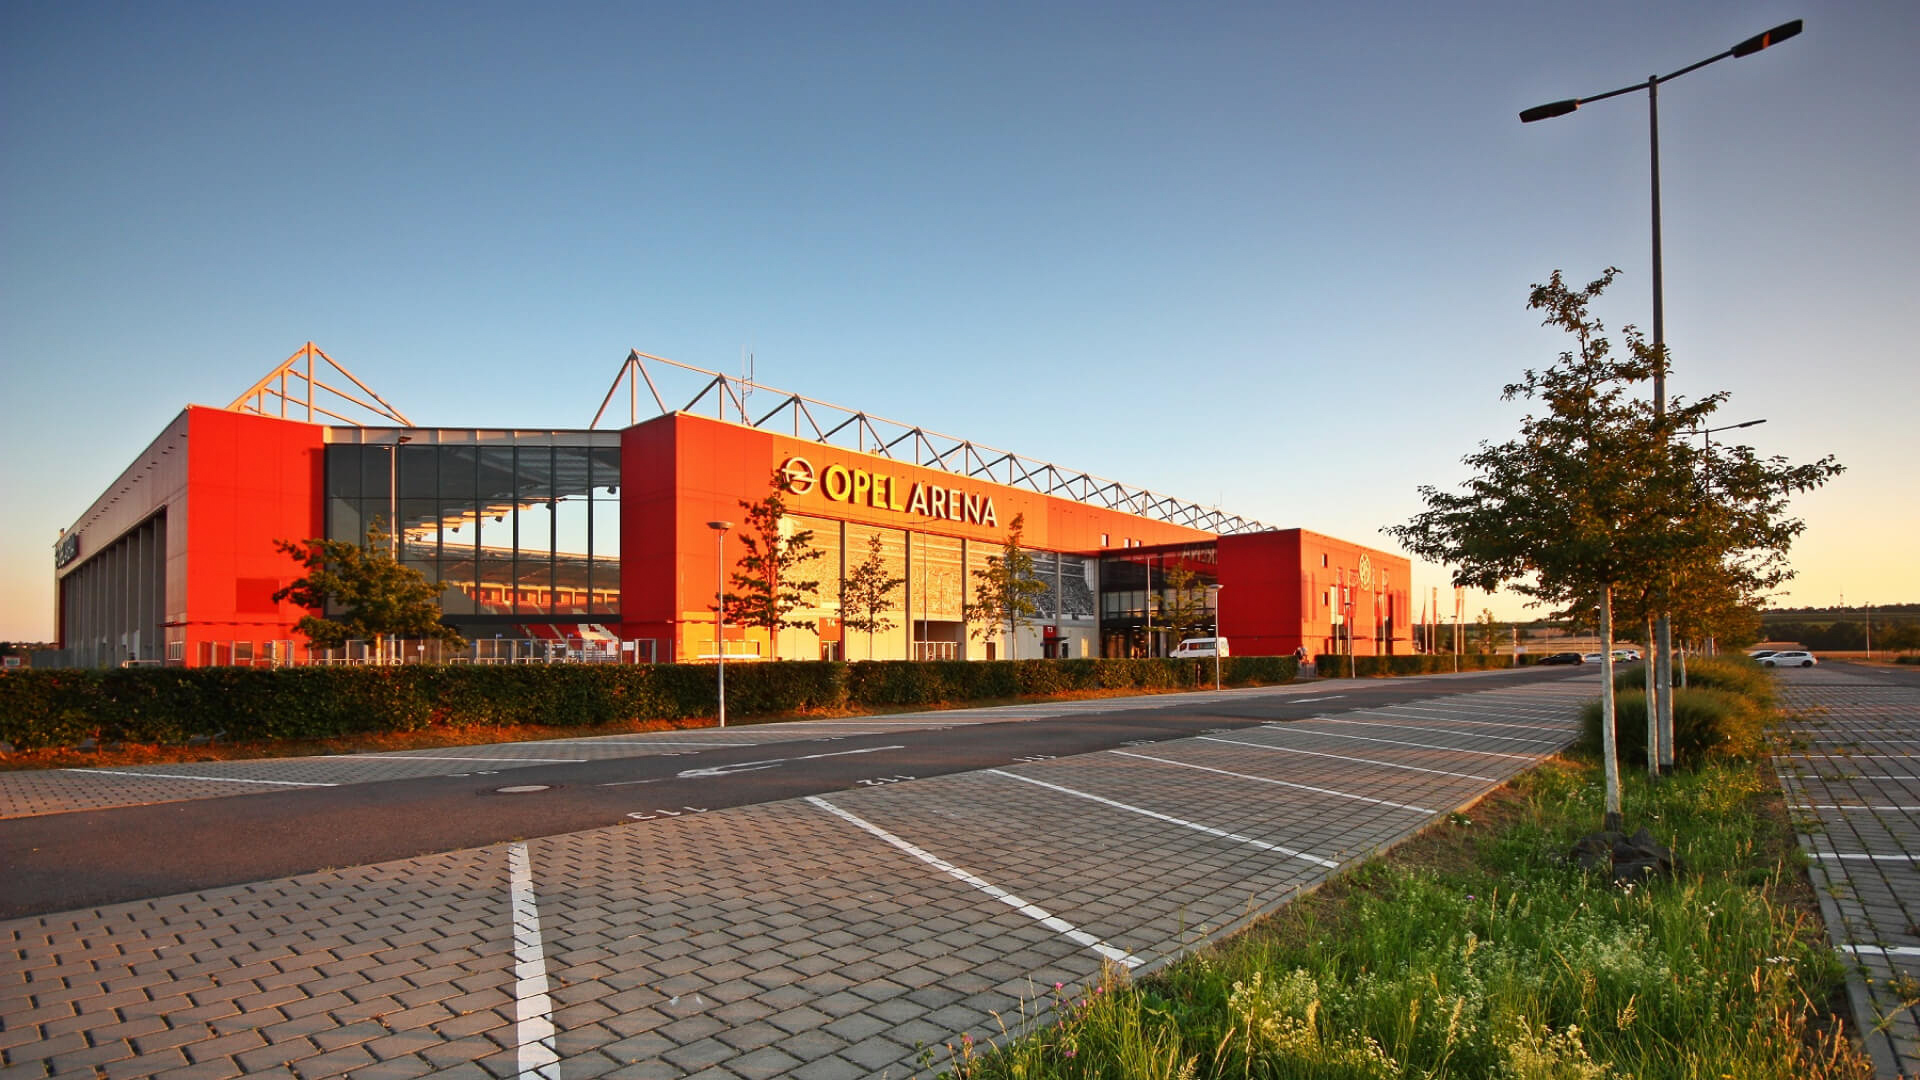 Mainz Opel Arena